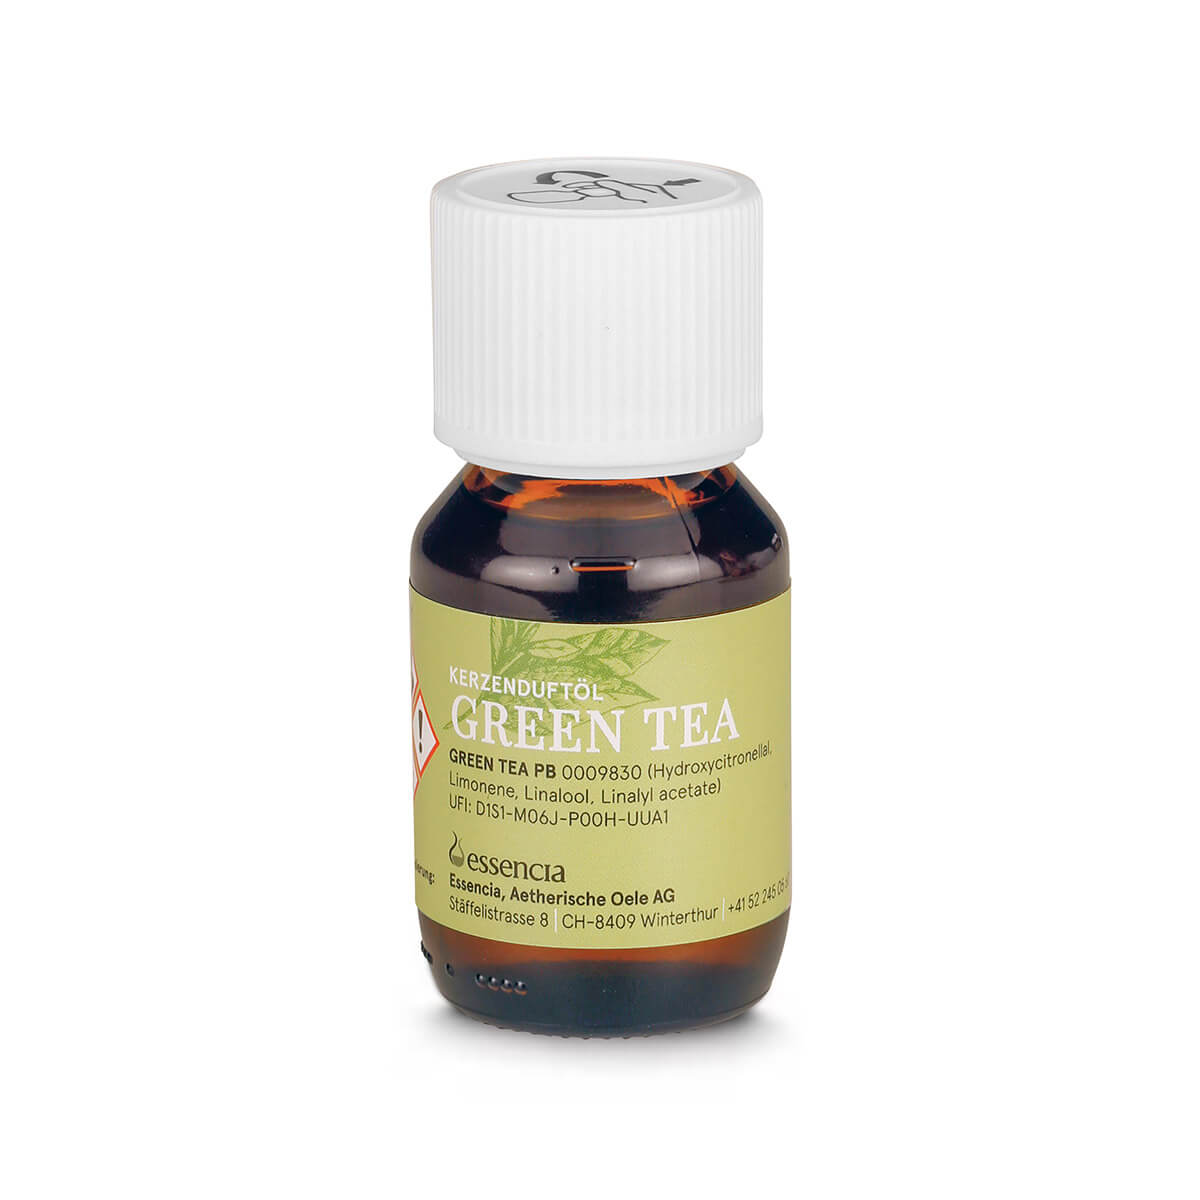 Kerzenduftöl Green Tea – Fläschchen à 50 ml